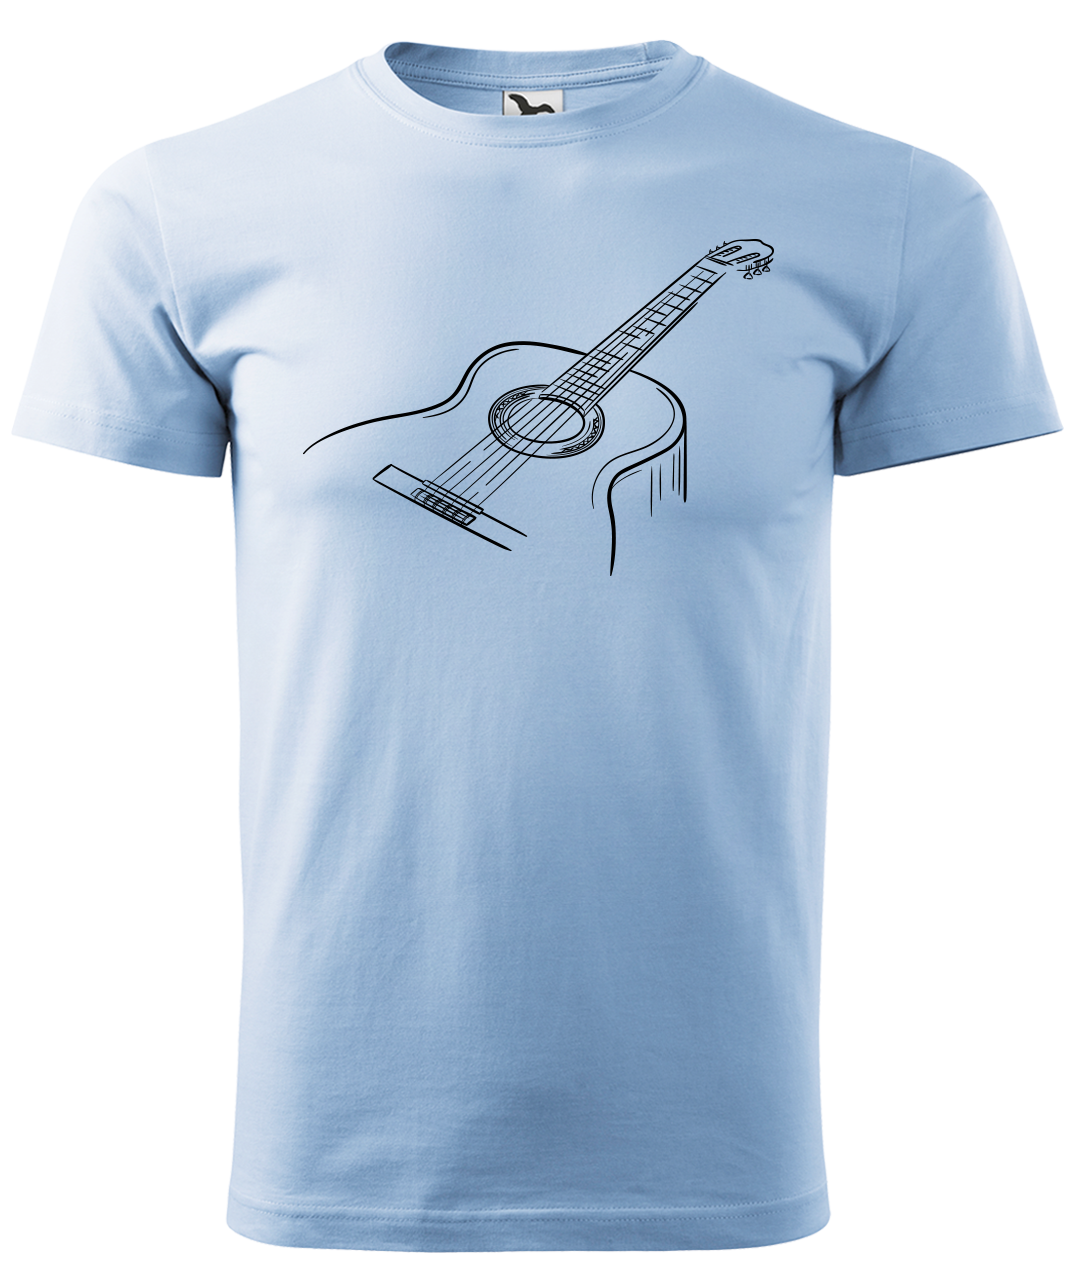 Dětské tričko s kytarou - Klasická kytara Velikost: 12 let / 158 cm, Barva: Nebesky modrá (15)